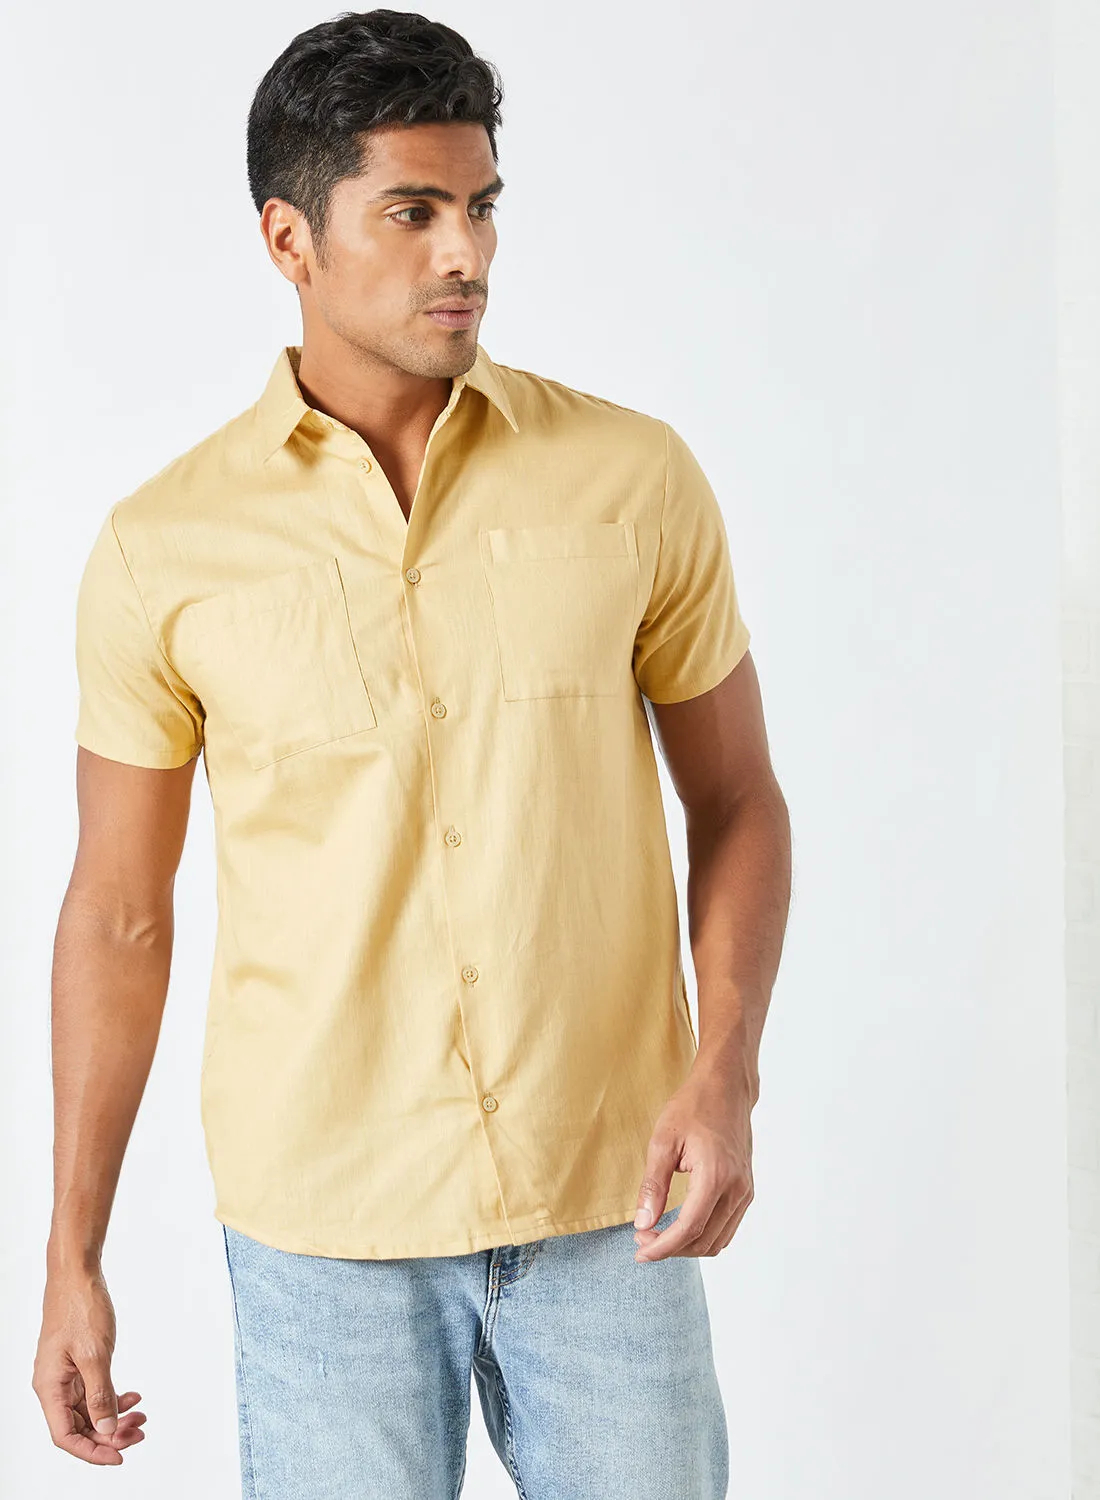 Sivvi x D'Atelier Short Sleeve Button Down Shirt Yellow